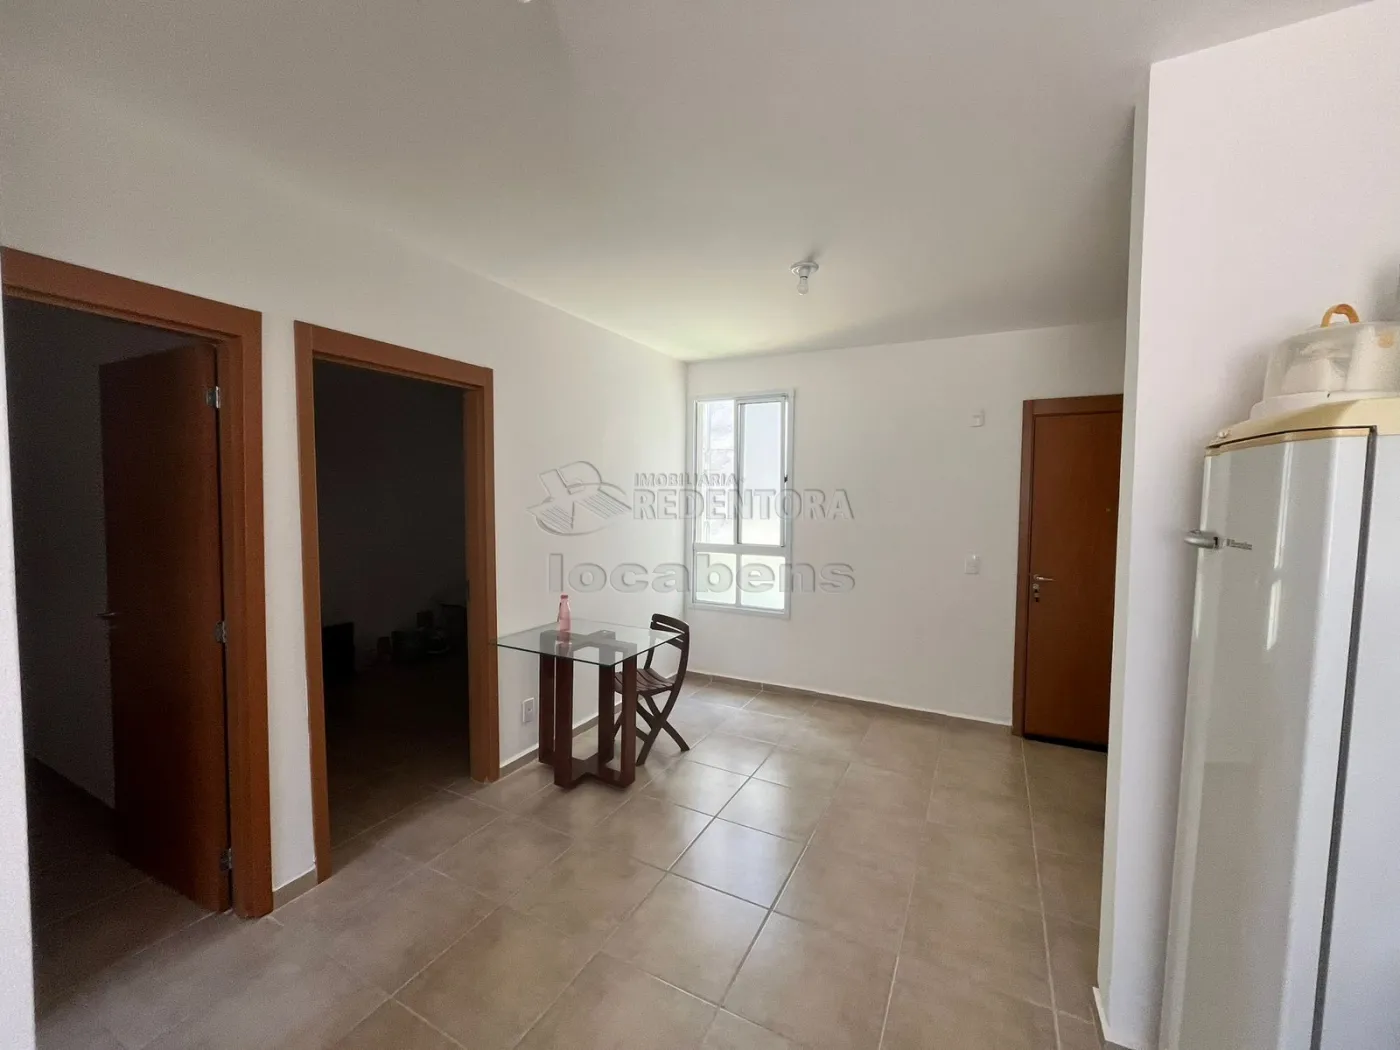 Alugar Apartamento / Padrão em São José do Rio Preto R$ 900,00 - Foto 2